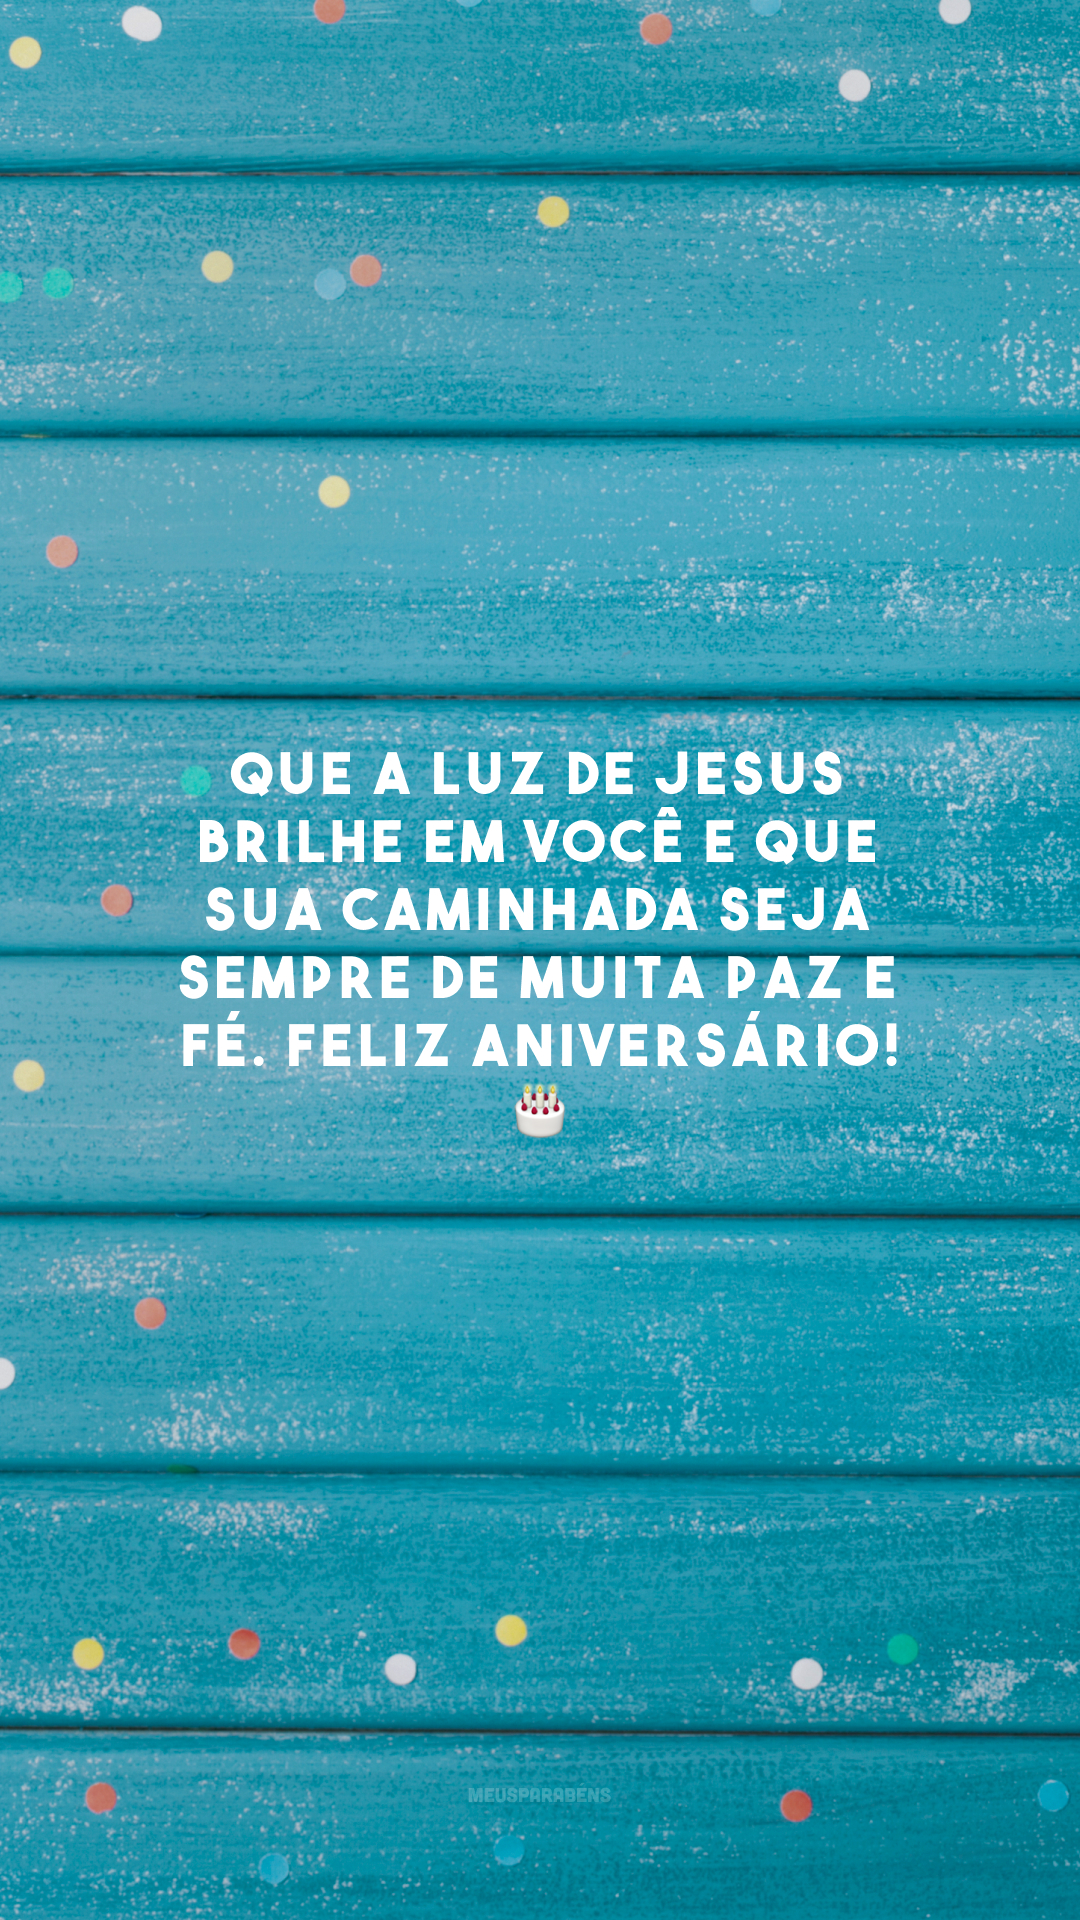 Que a luz de Jesus brilhe em você e que sua caminhada seja sempre de muita paz e fé. Feliz aniversário! 🎂